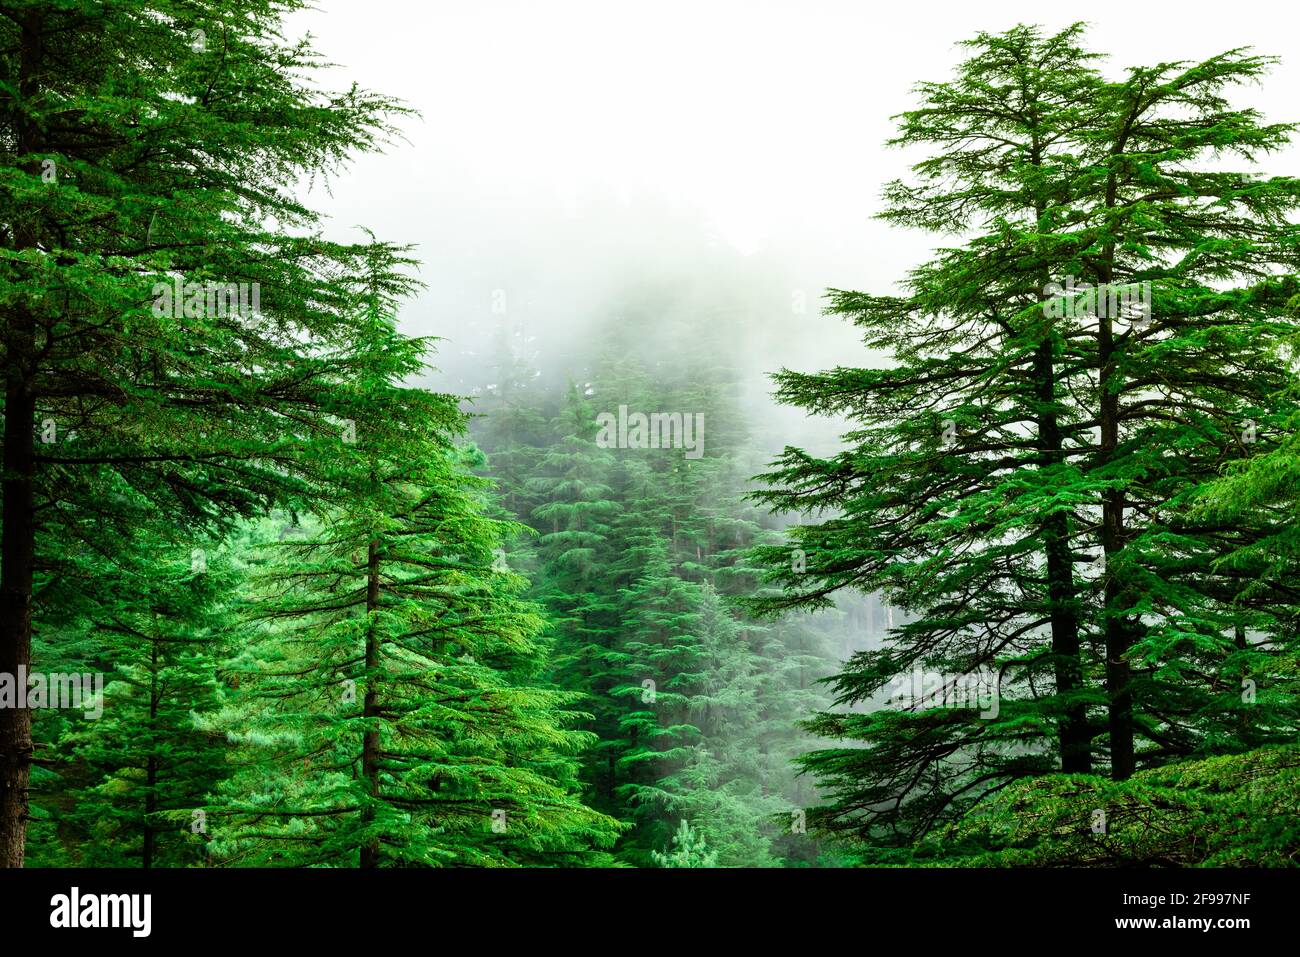 Ammira il percorso per il sentiero escursionistico Triund attraverso il lussureggiante paesaggio verde a Mcleod ganj, Dharamsala, Himachal Pradesh, India. La cima della collina di Triund offre la vista di h Foto Stock